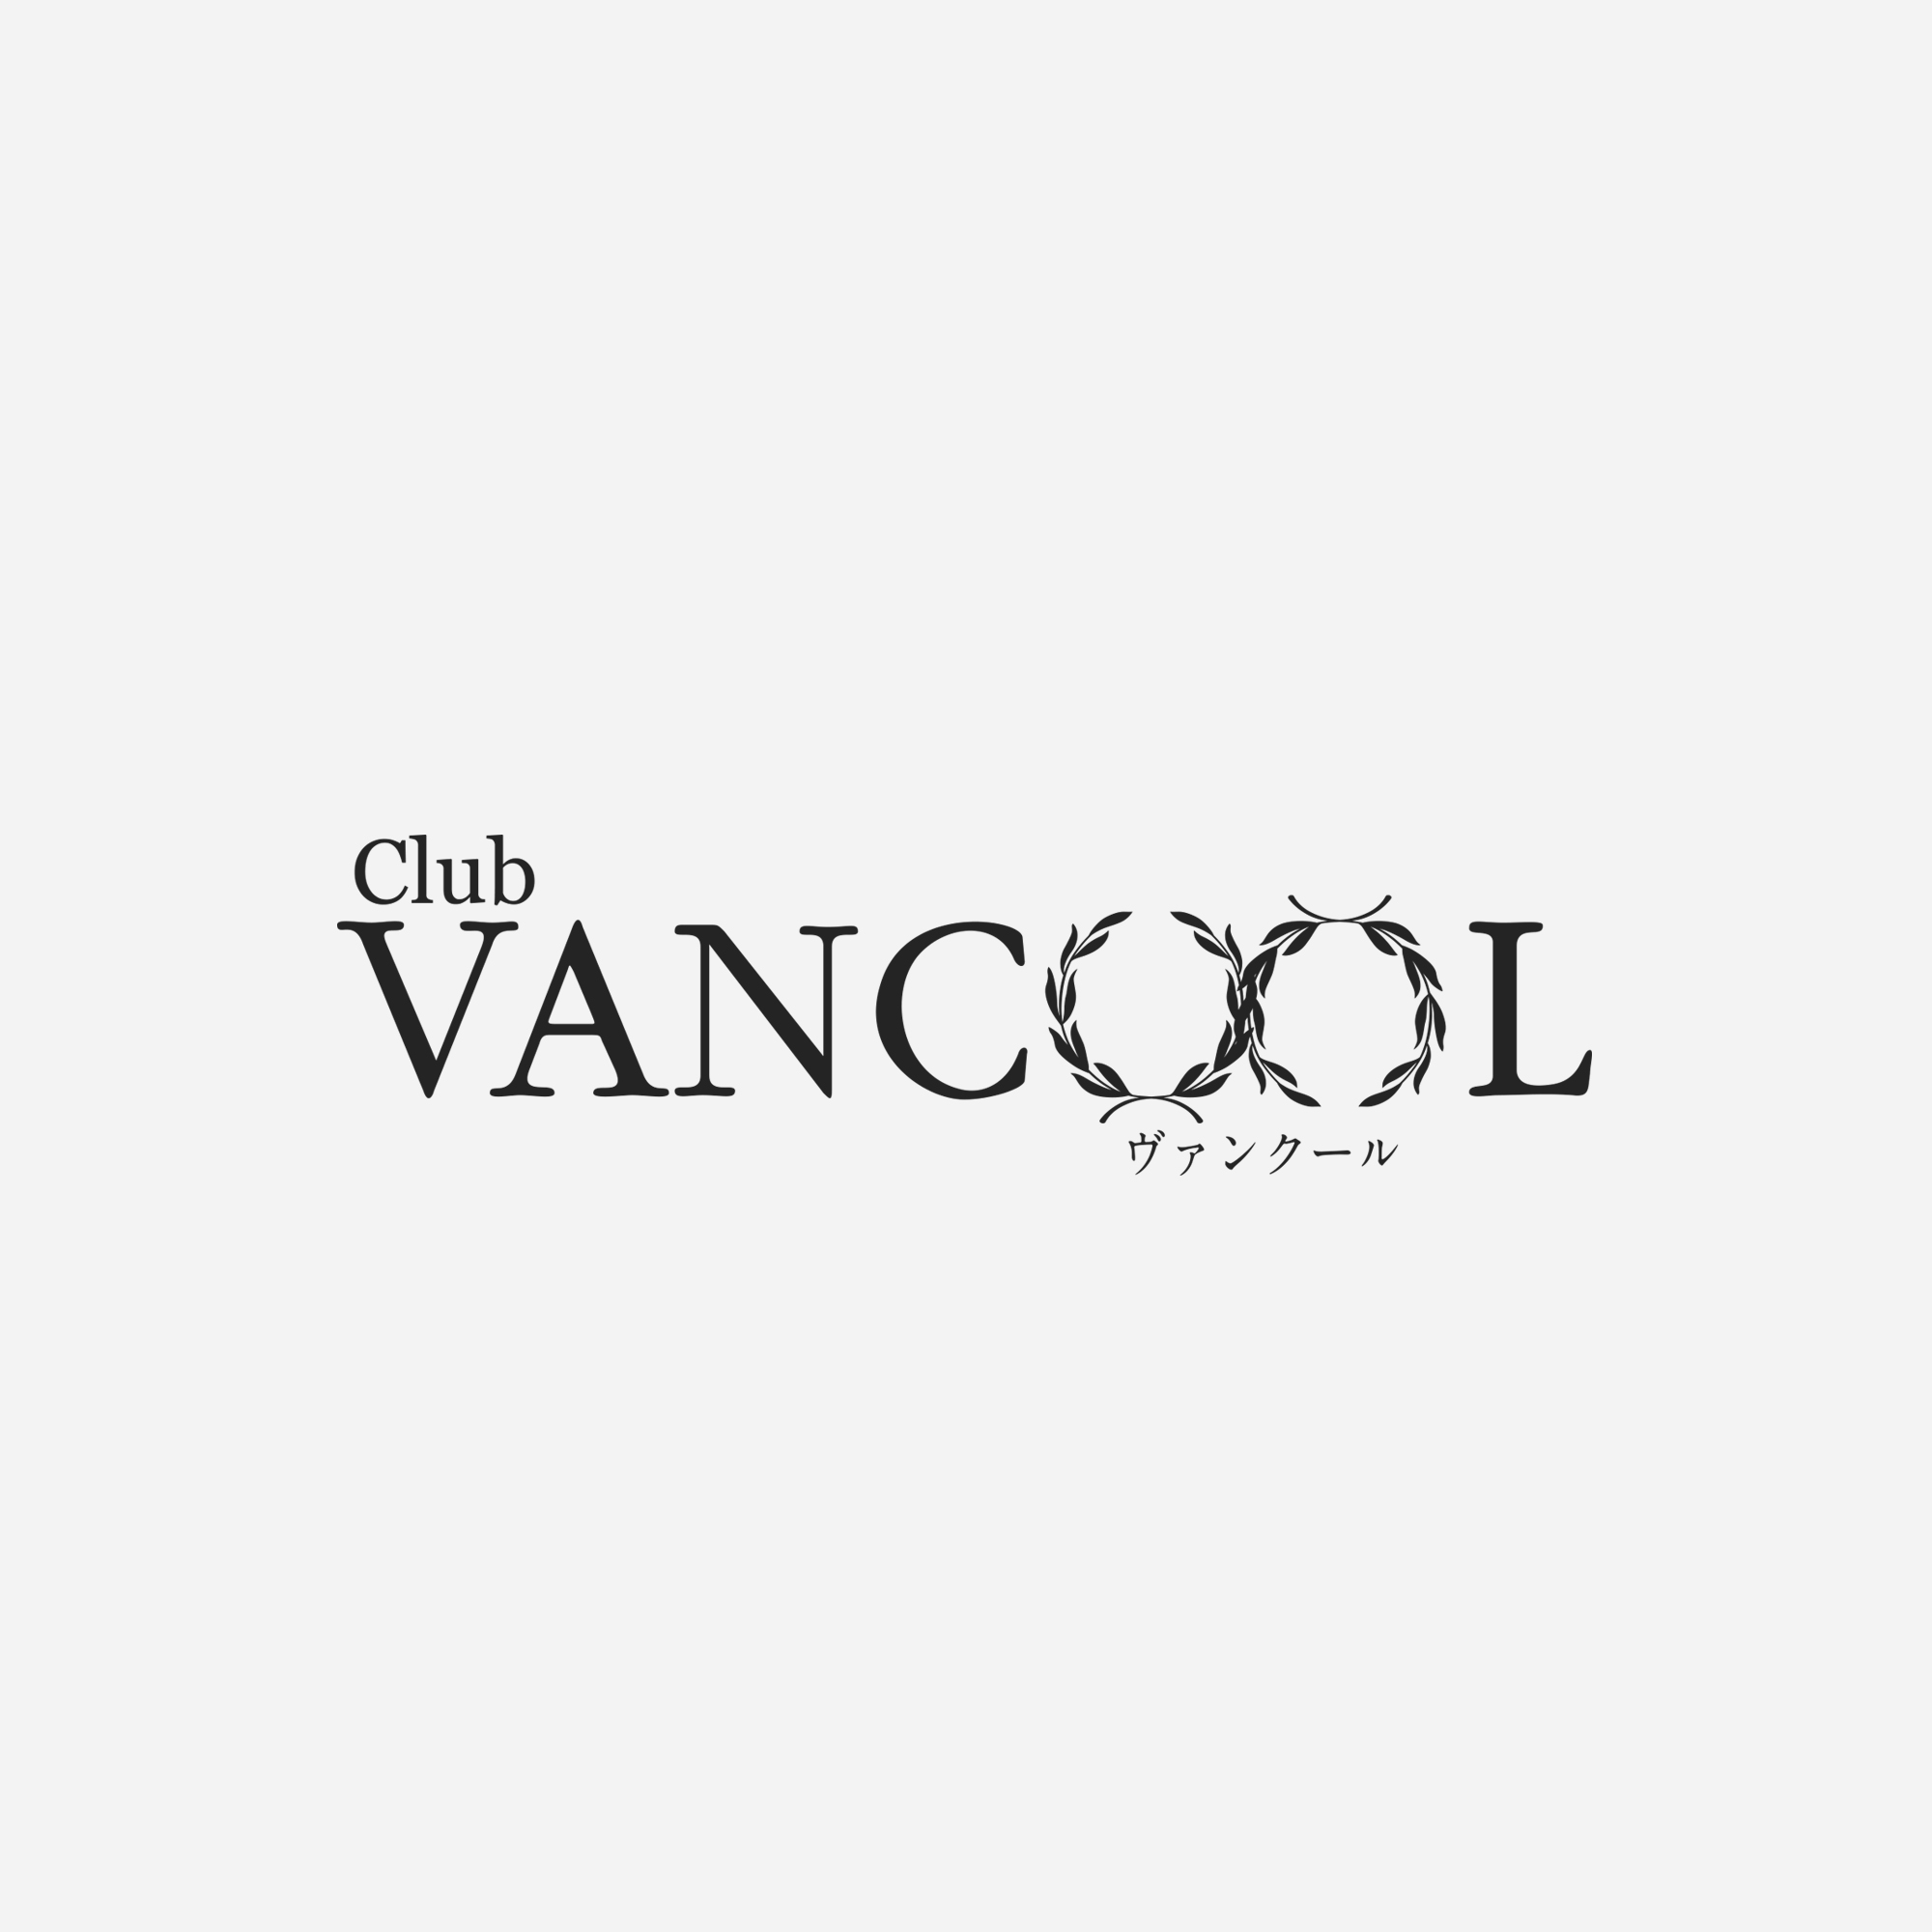 画像未登録時の代替え画像のVANCOOLのロゴバナー